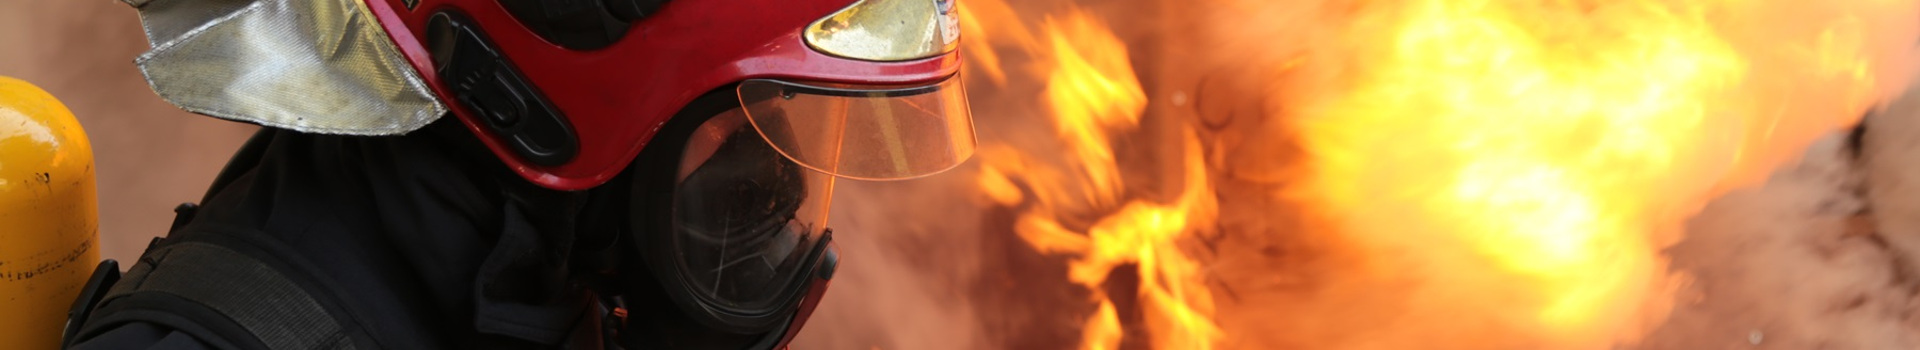 Szkolenia strażaków - strażak w aparacie ochrony dróg oddechowych, w tle rozwinięty pożar